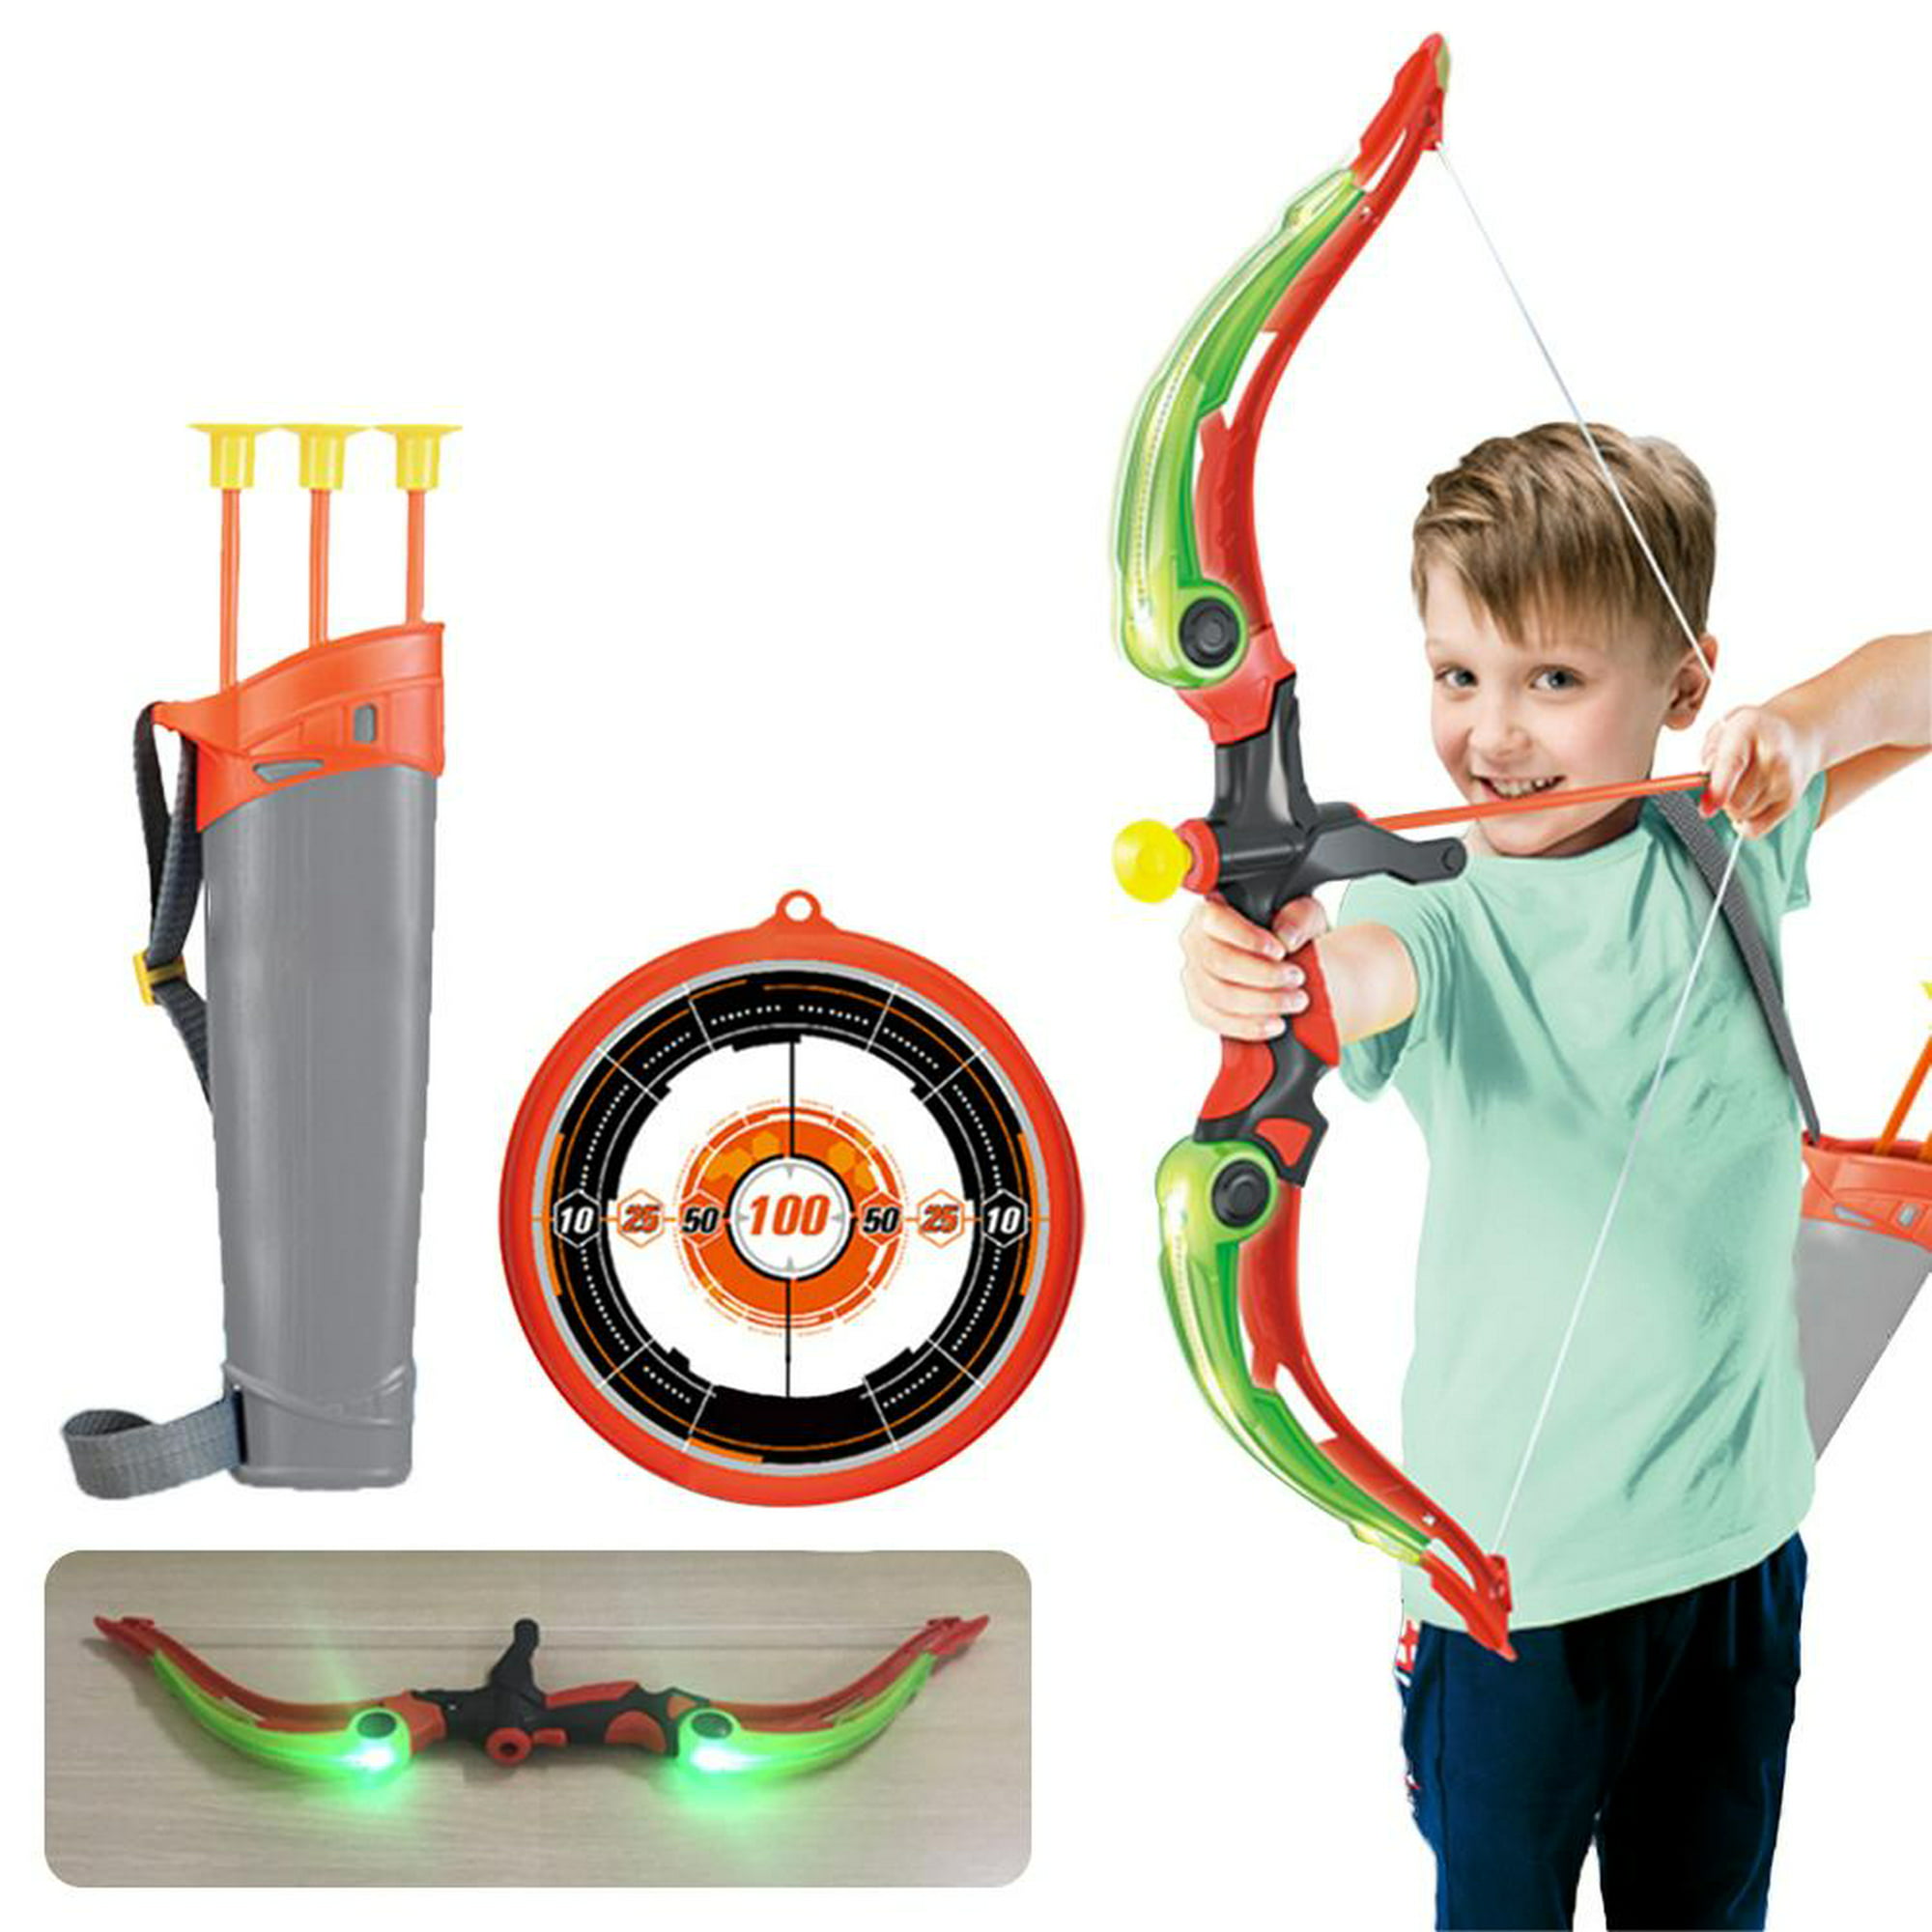 Arco con Flechas para adulto e infantil